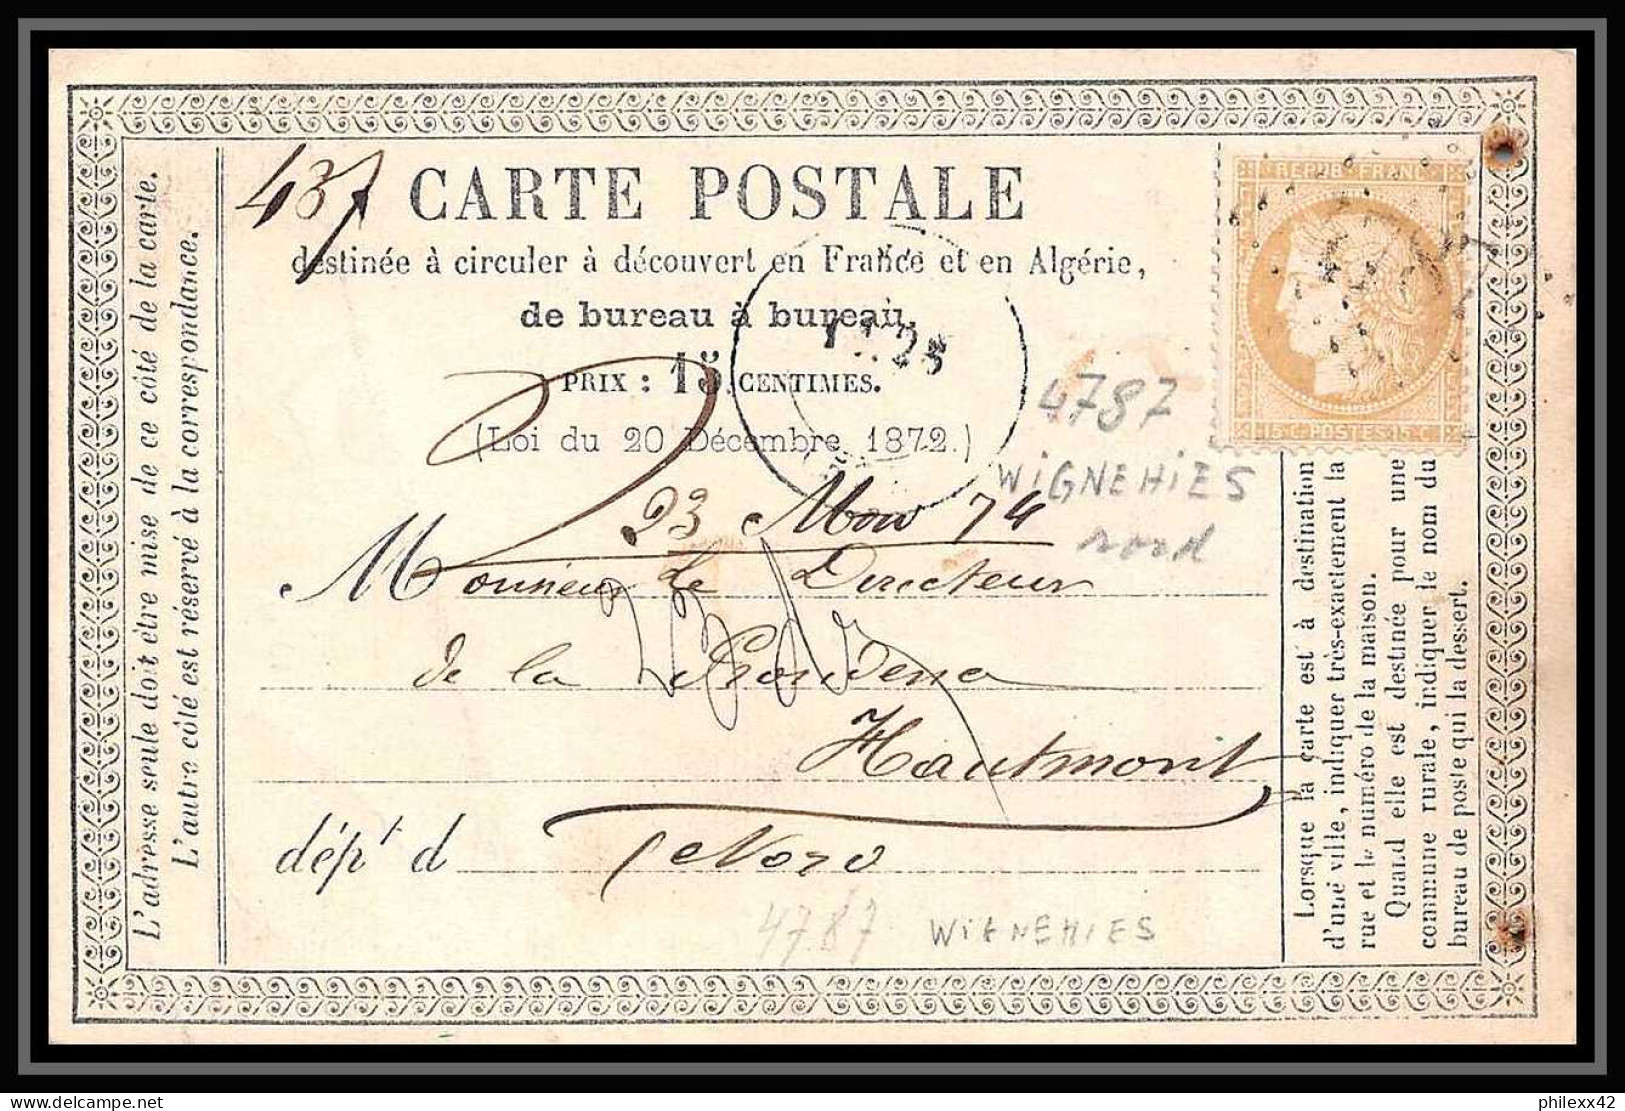 8761 LAC Entete Mairesse N 59 Ceres 15c GC 4787 Wignehies Nord 1874 France Precurseur Carte Postale (postcard) - Precursor Cards